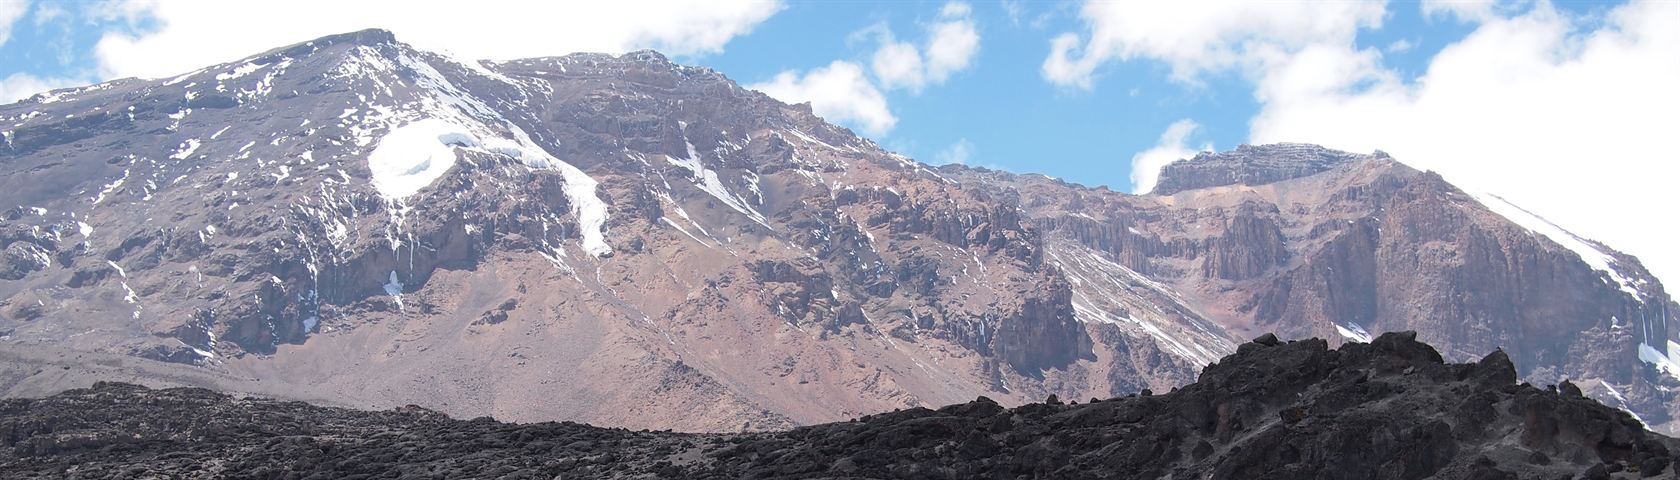 Intimidating Kilimanjaro